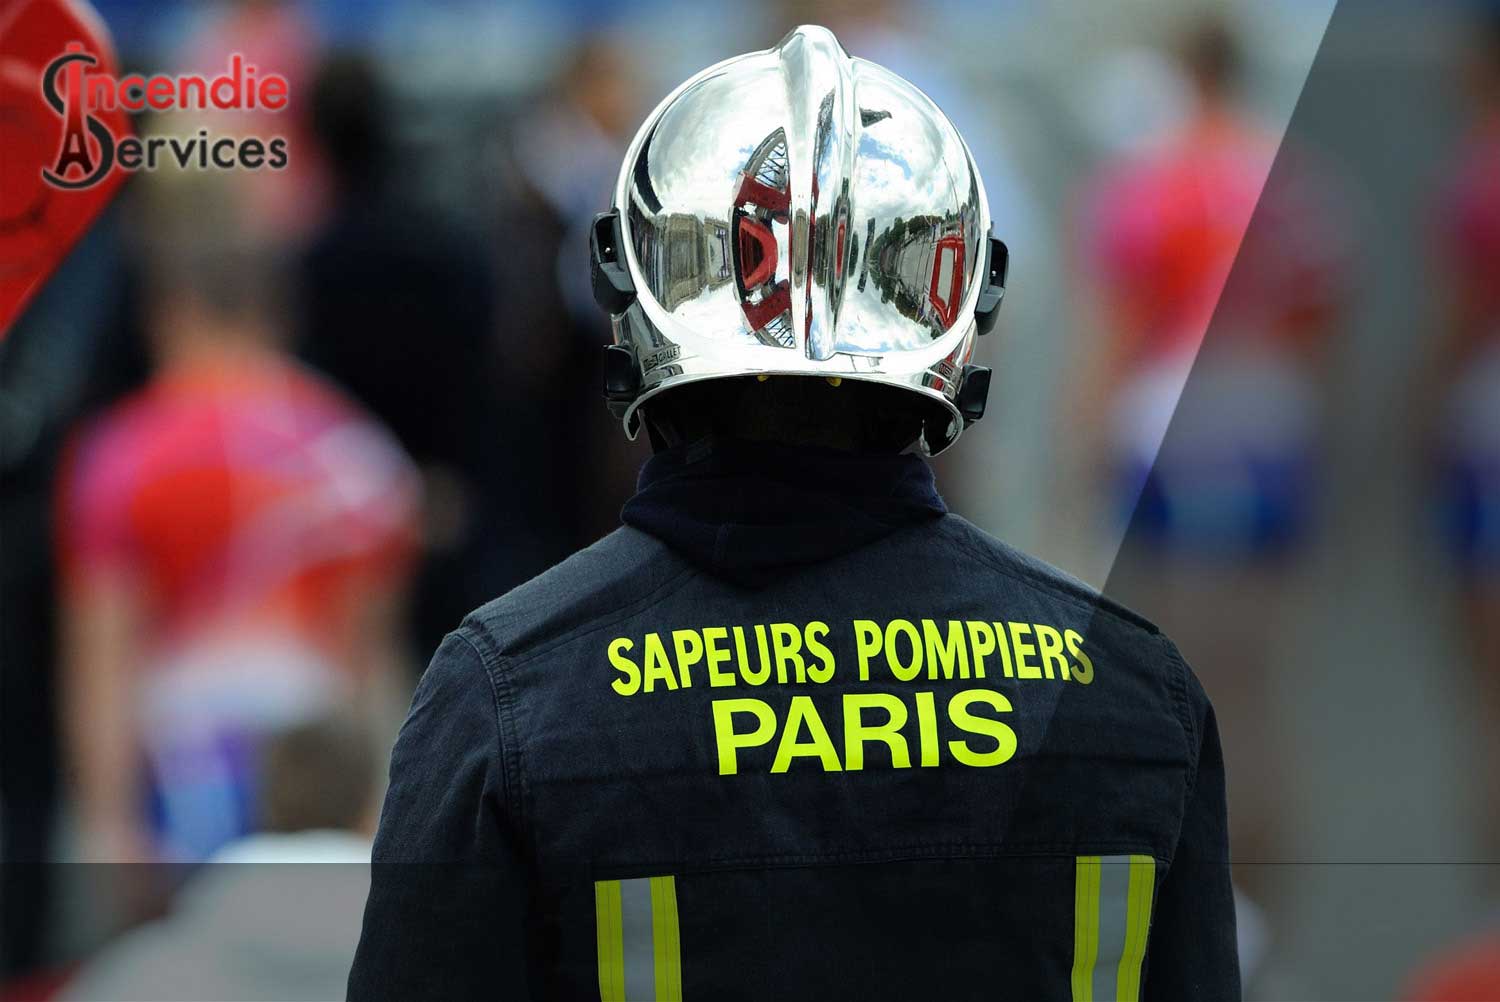 MAINTENANCE EXTINCTEUR PARIS (75) - Entreprise Certifiée | Incendie Services à Paris 75